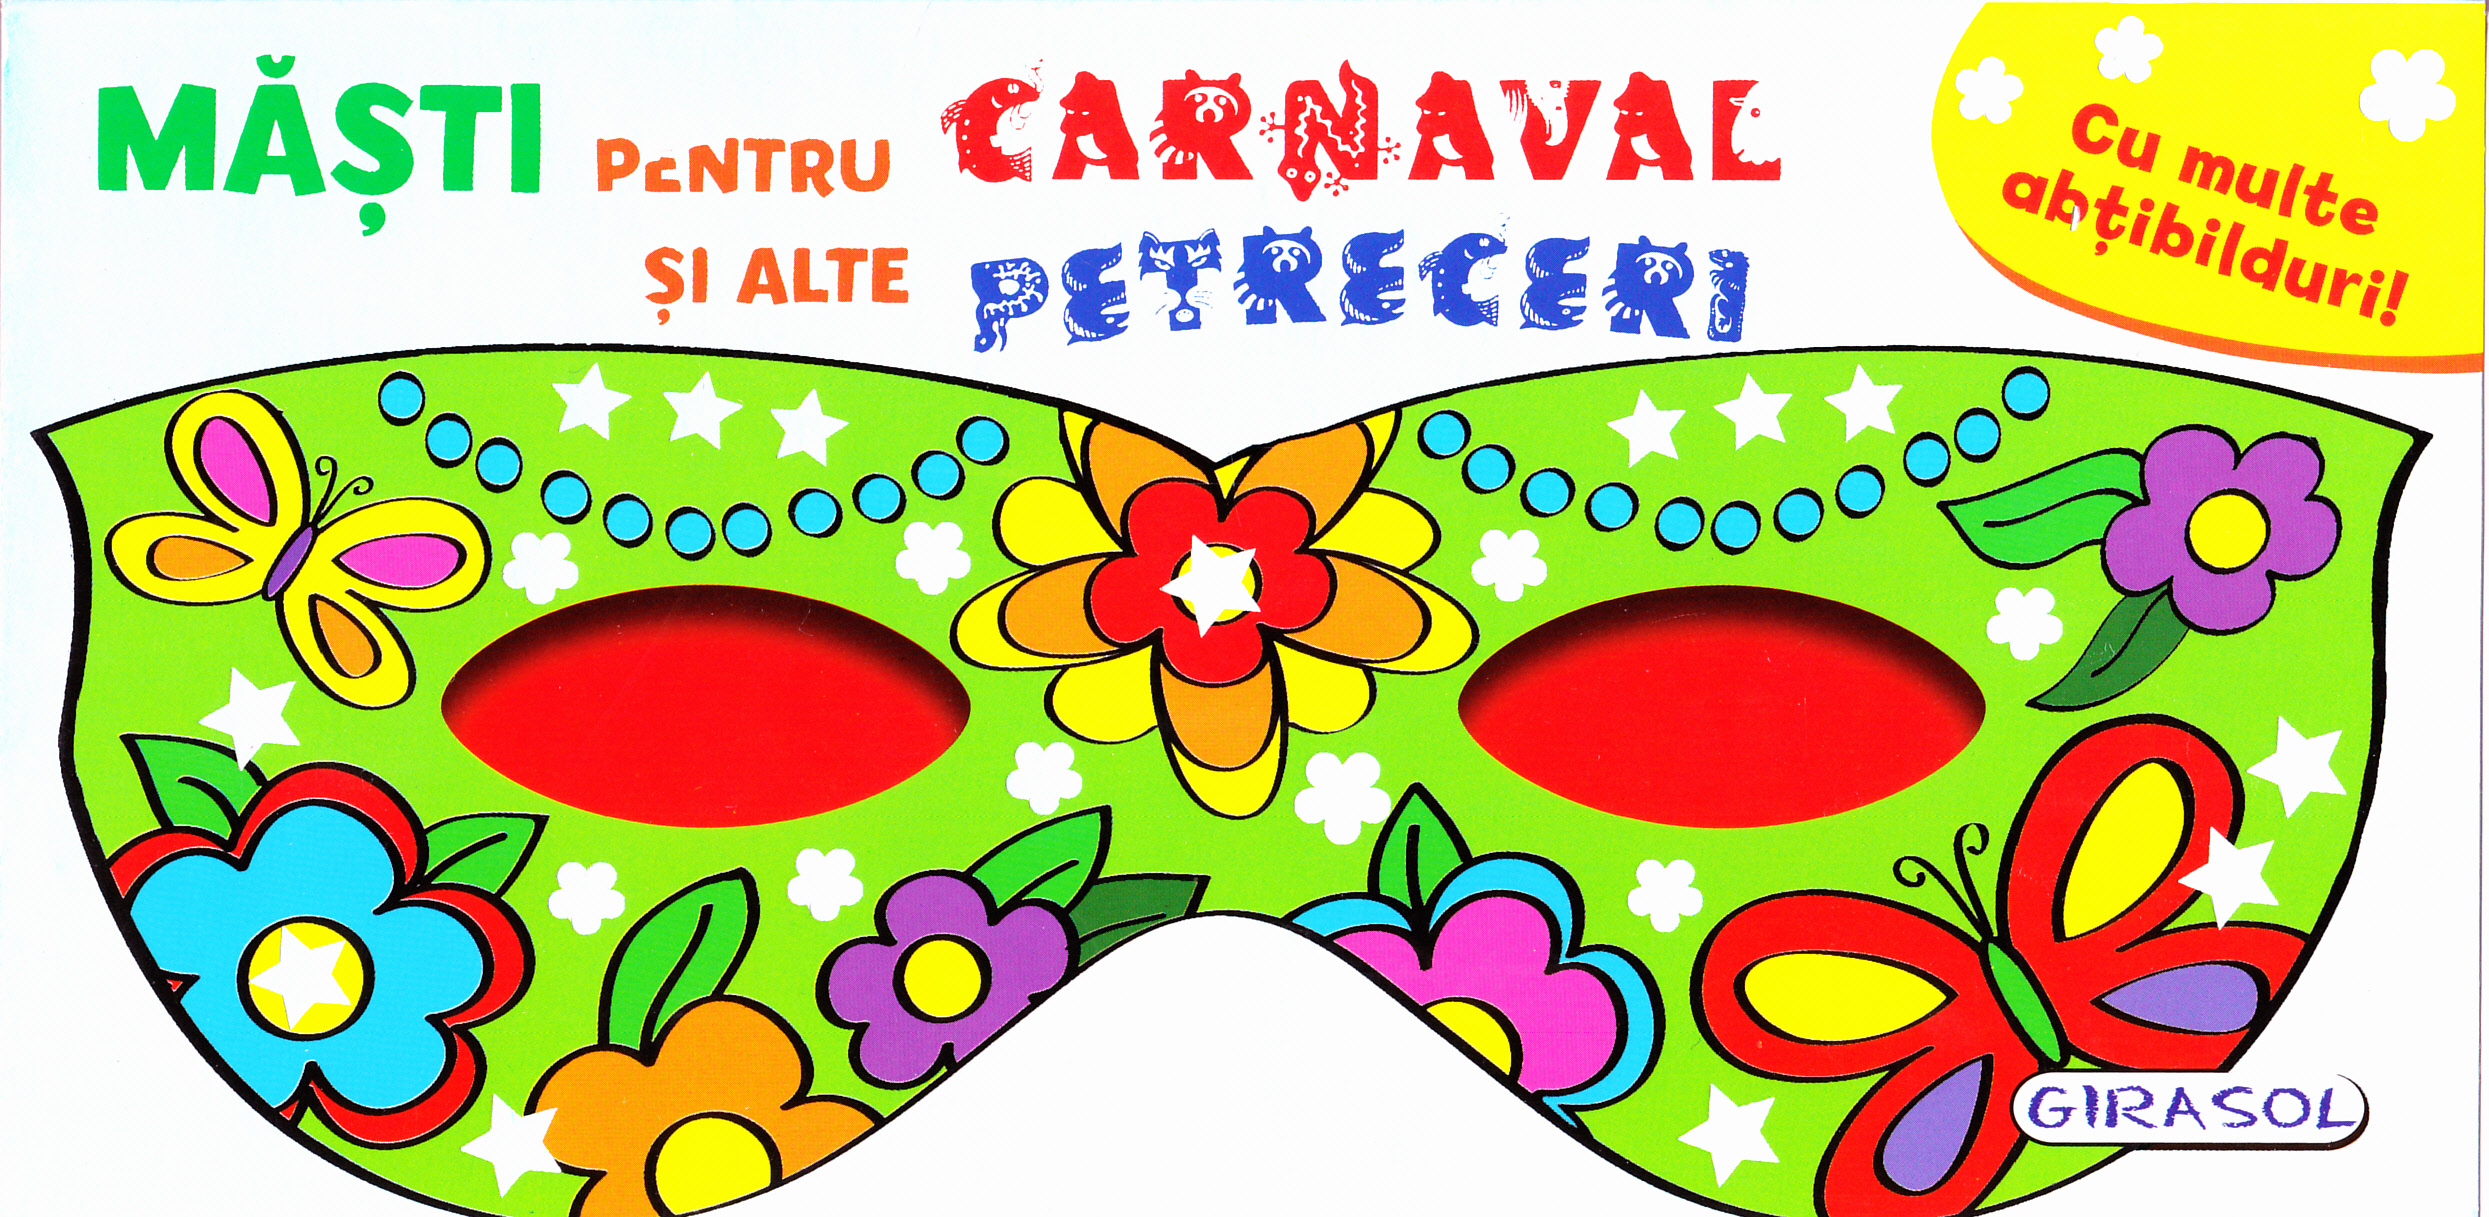 Masti pentru Carnaval si alte Petreceri